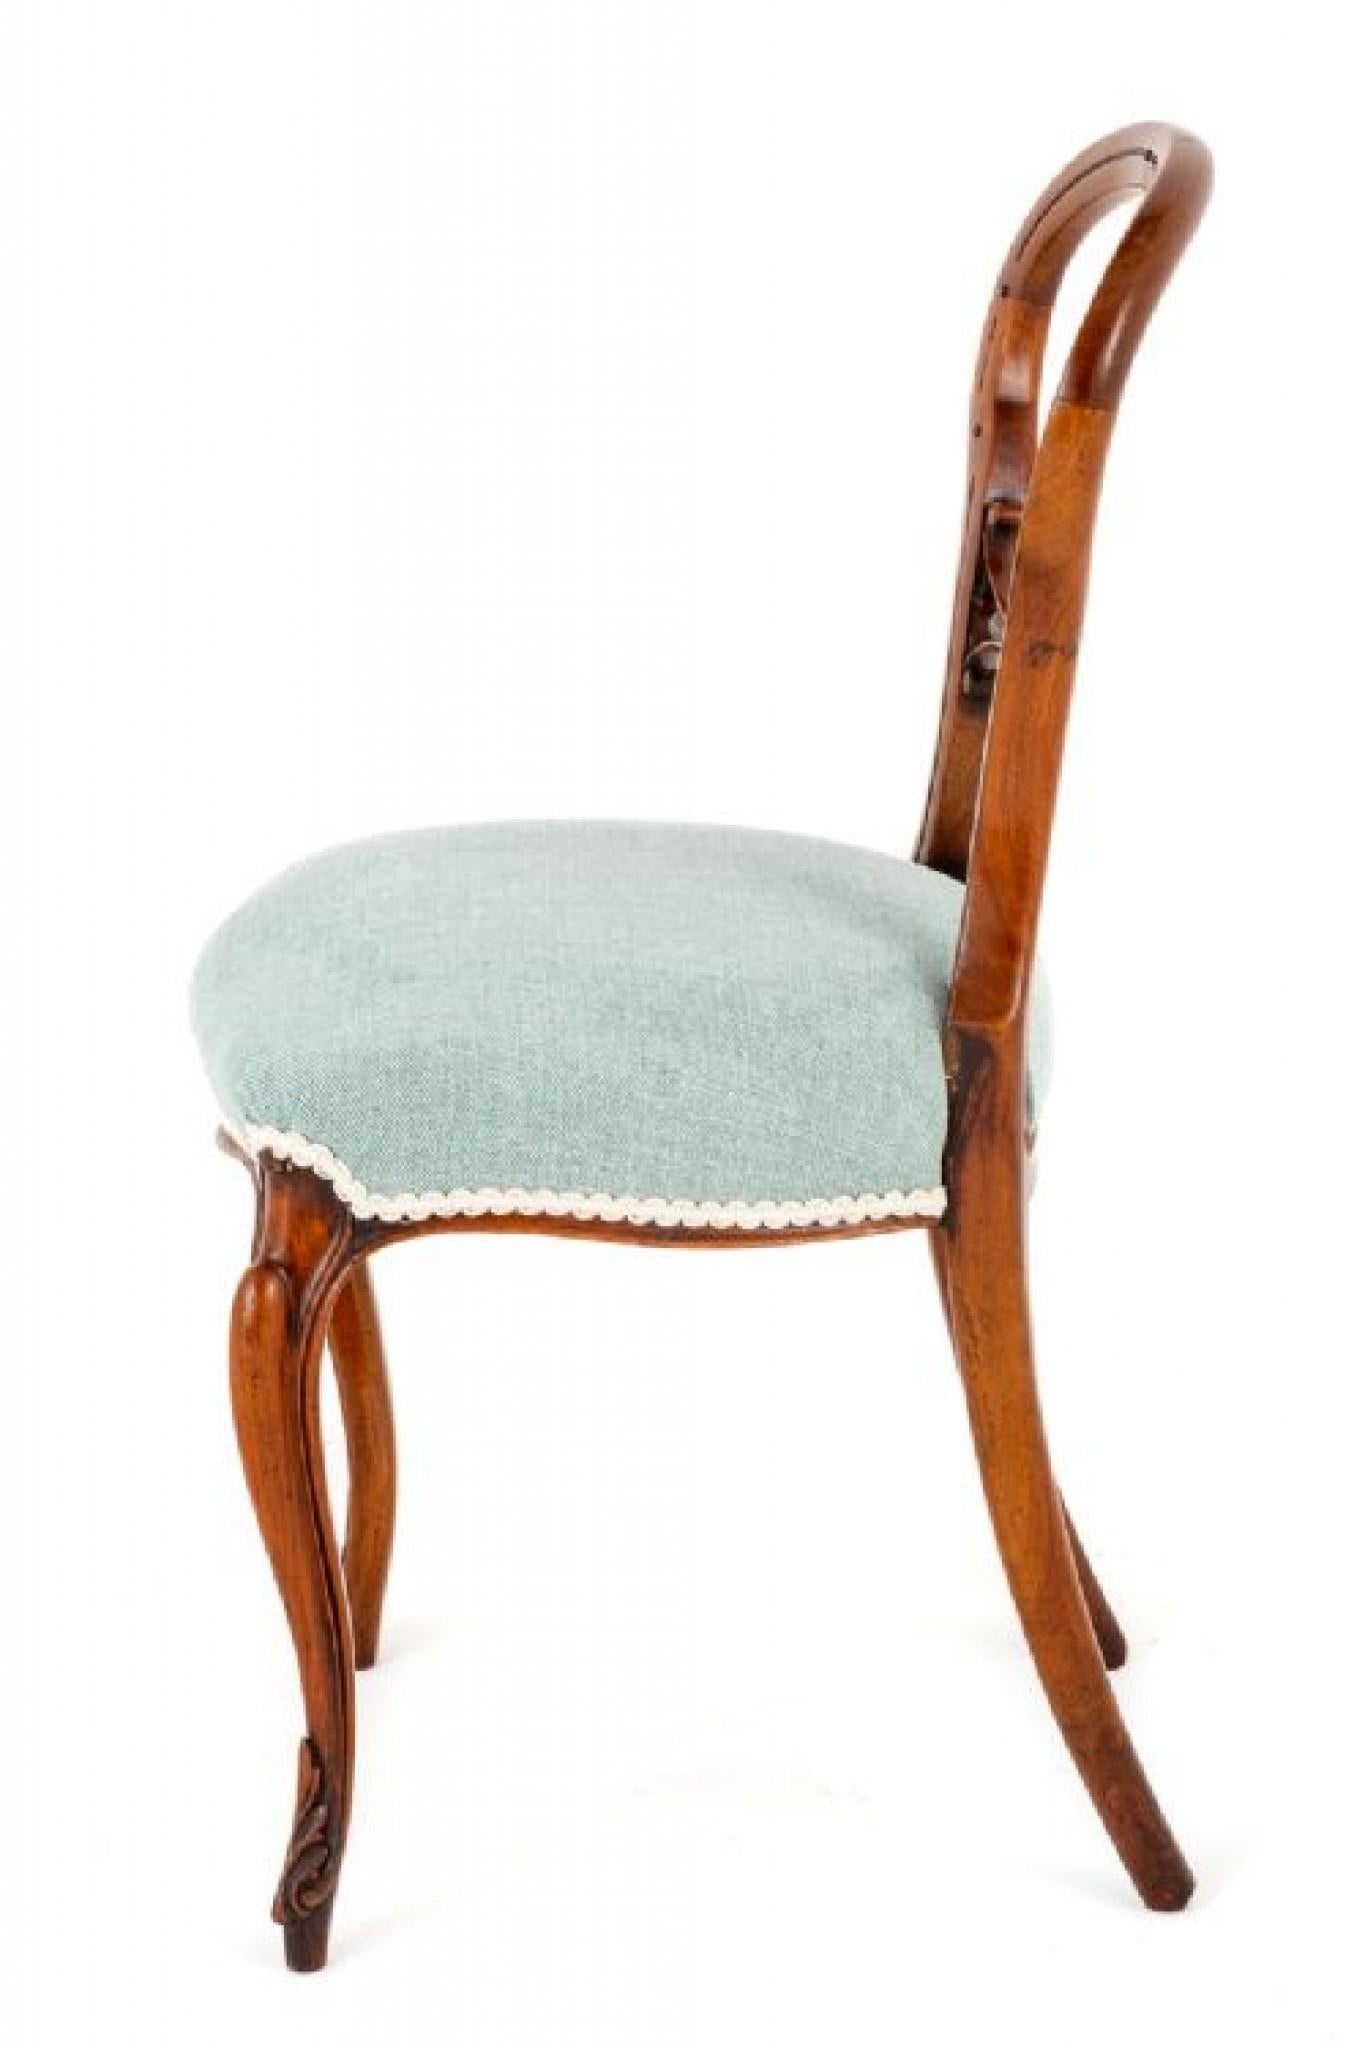 Hier haben wir einen Satz von 6 Nussbaum viktorianischen Cabriole Leg Dining Chairs.
Die Stühle sind auf Cabriole Vorderbeine mit geschnitzten Zehen und Swept Back Legs erhöht.
CIRCA 1860
Die Chais haben Stuff Over Seats, die kürzlich neu gepolstert